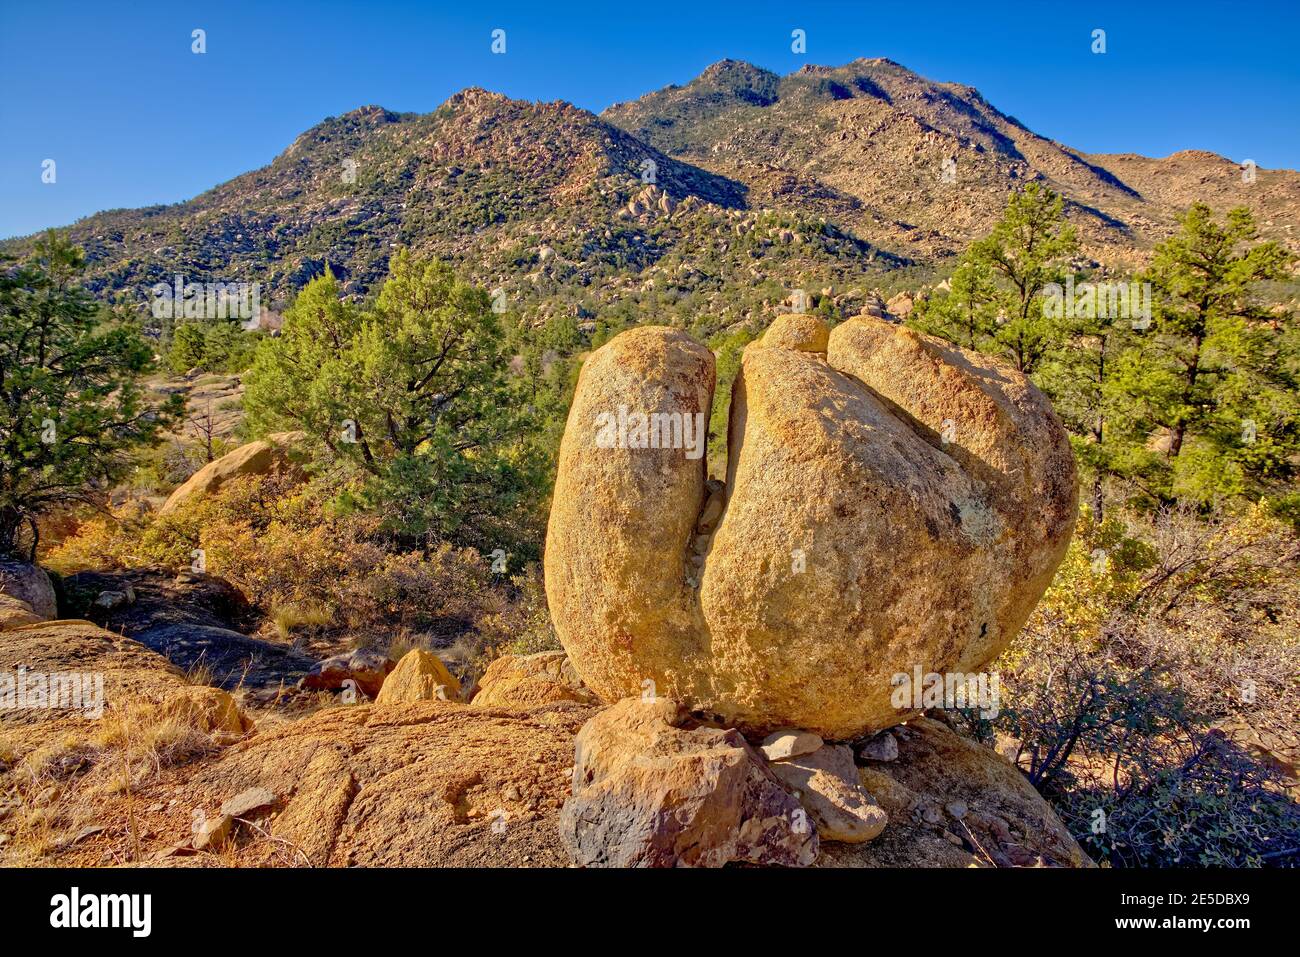 Gigantes Boulders, Área recreativa de la Cuenca de granito, Bosque Nacional Prescott, Arizona, EE.UU Foto de stock